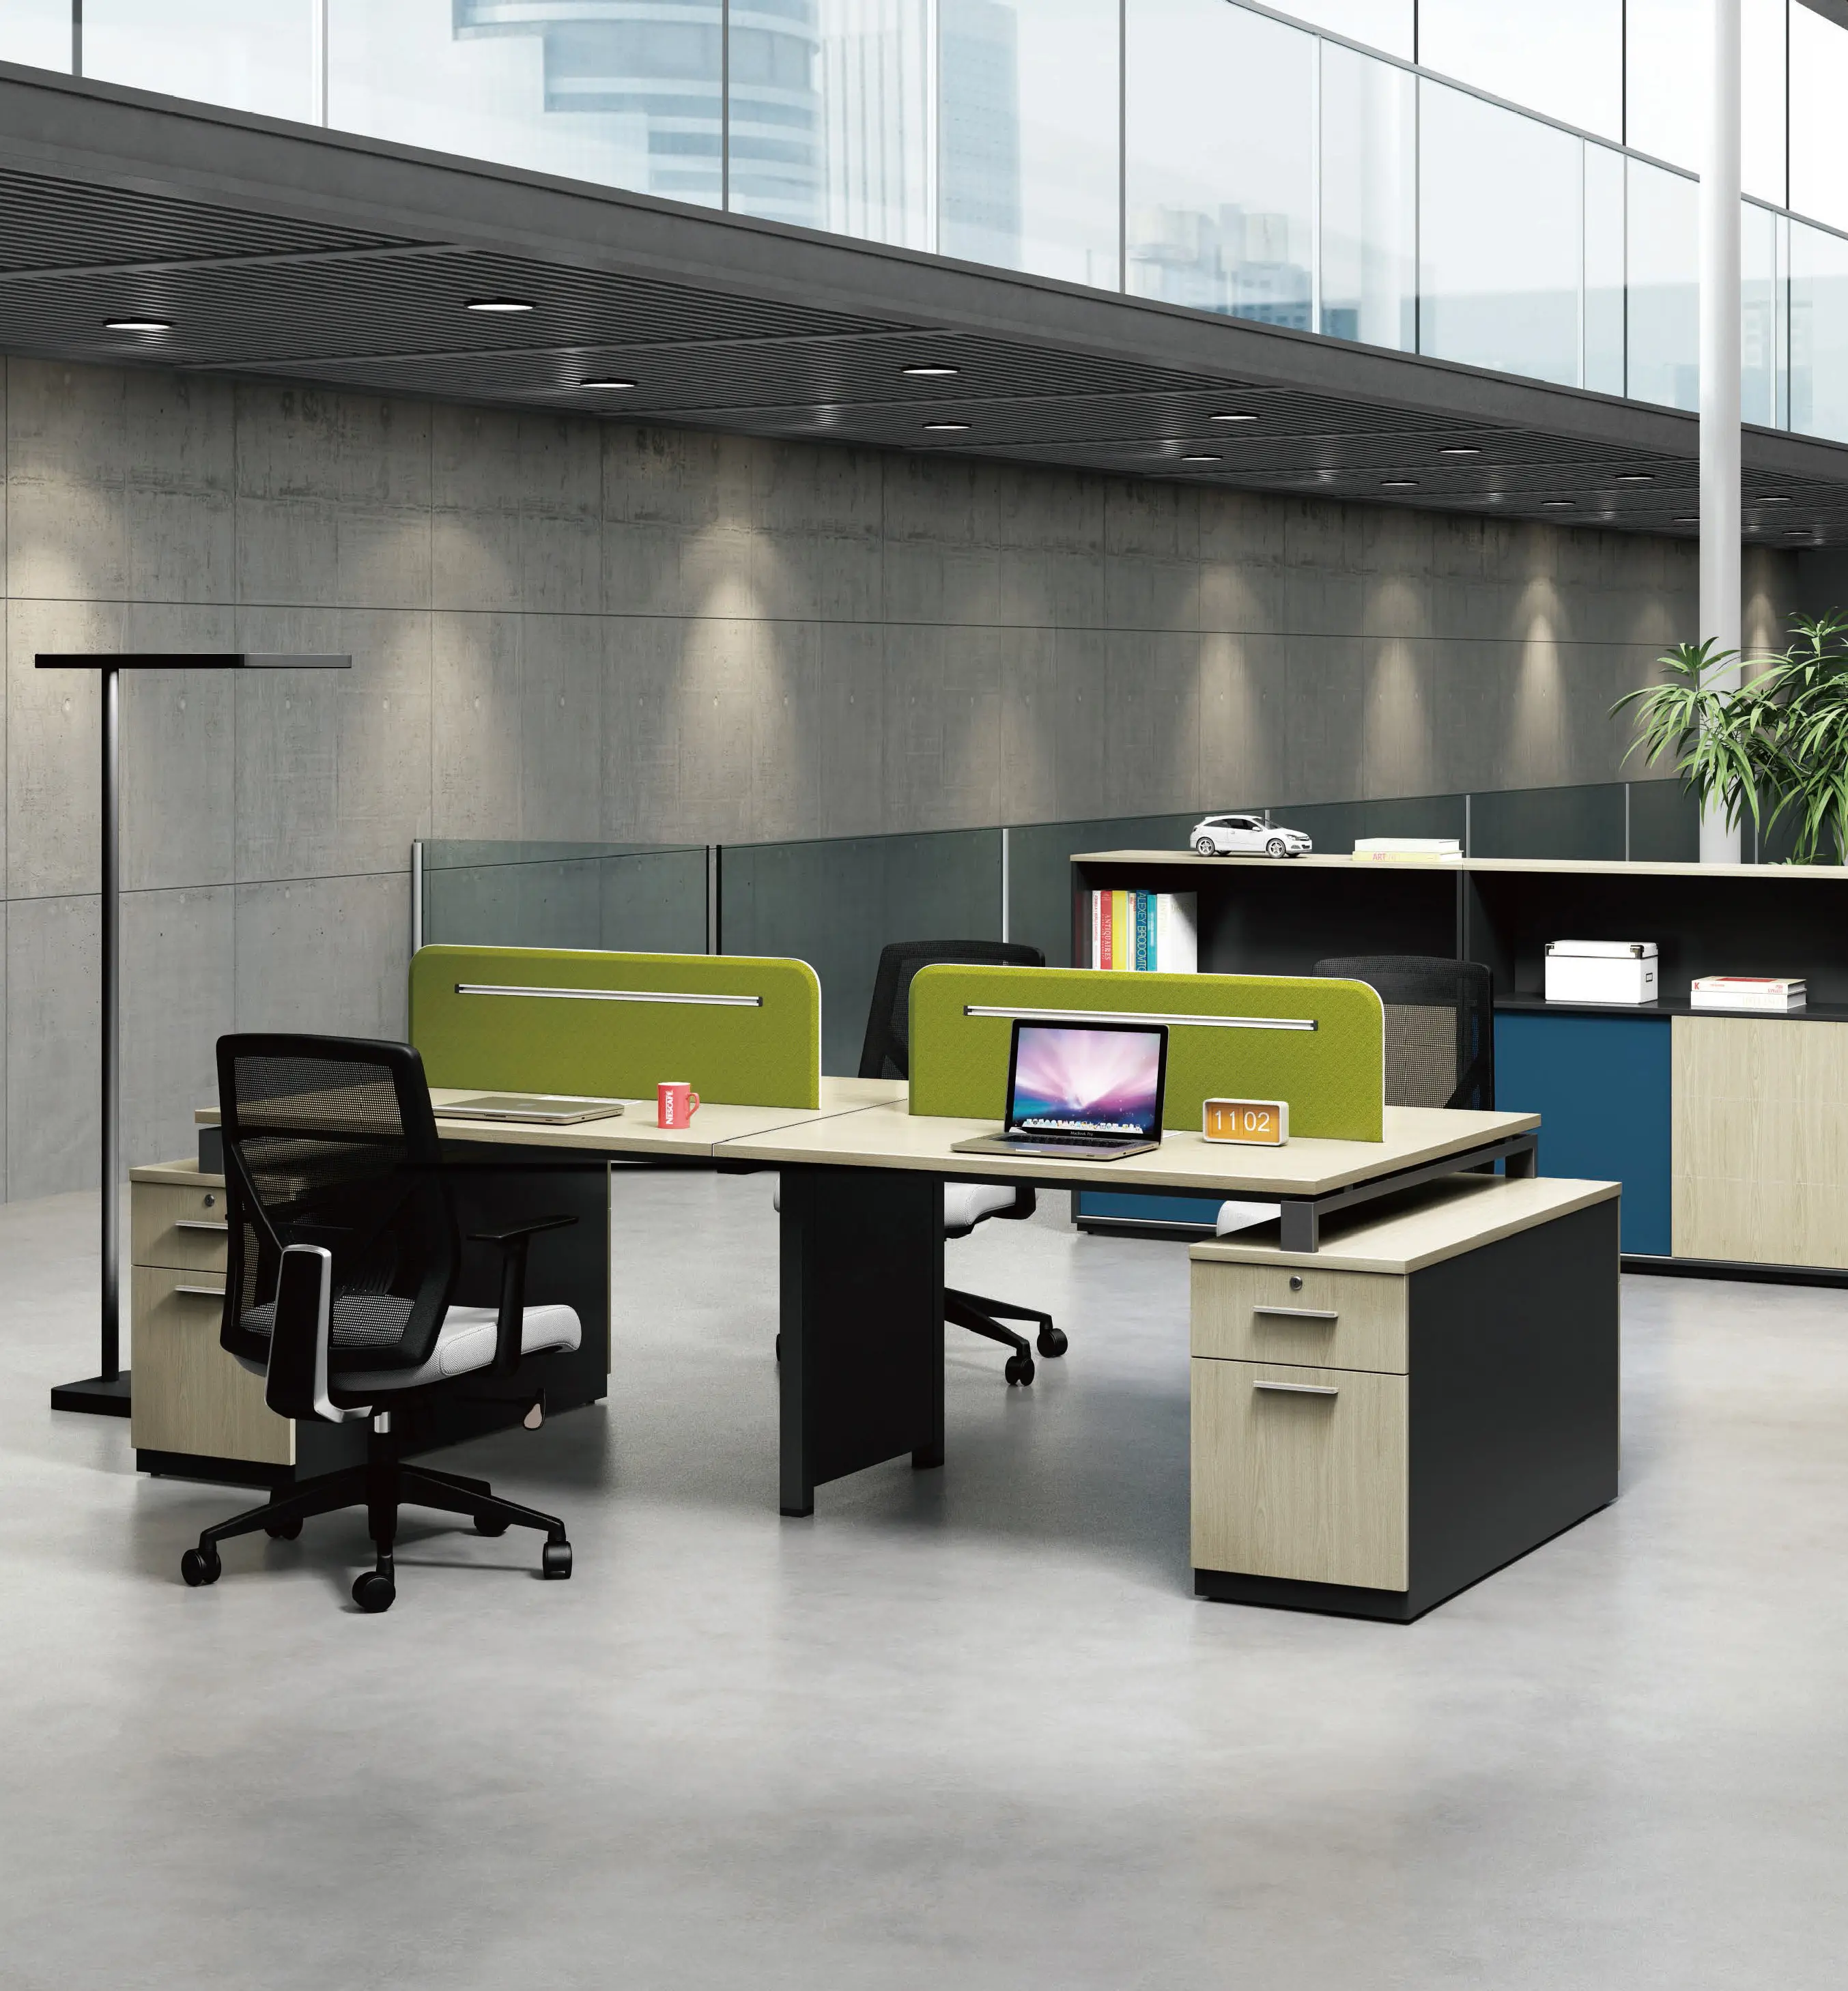 Rumah kantor Modern 3 4 tempat duduk sistem kerja desain CEO meja kerja